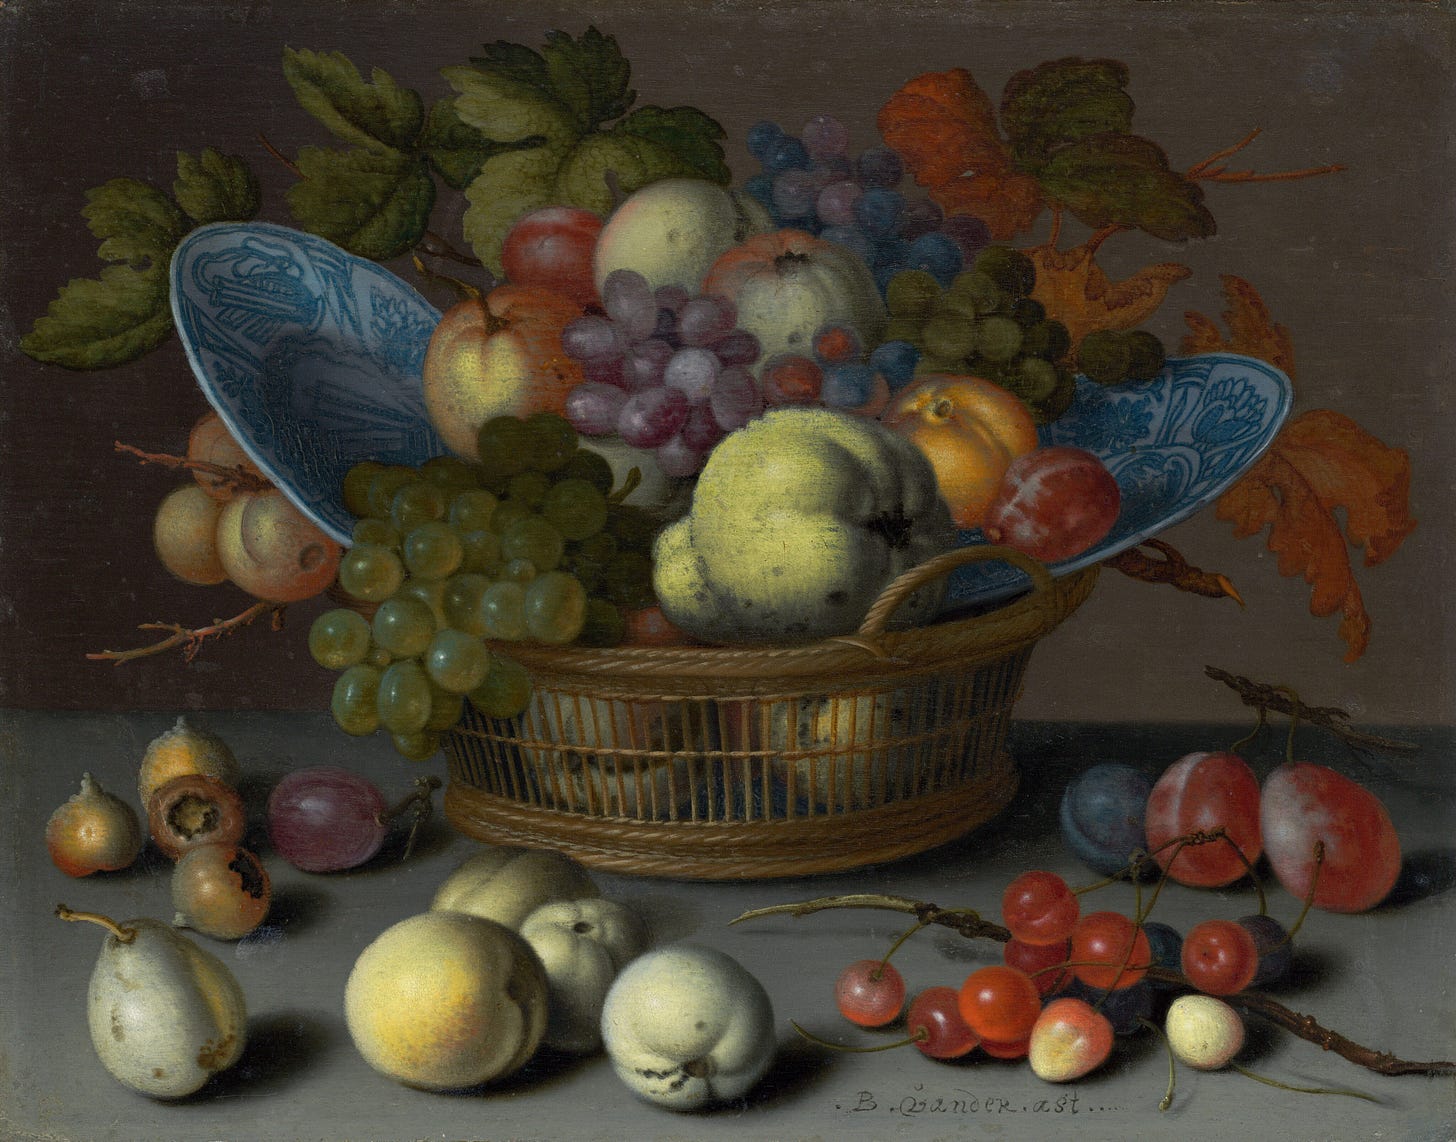 Basket of Fruits, c. 1622 by Balthasar van der Ast